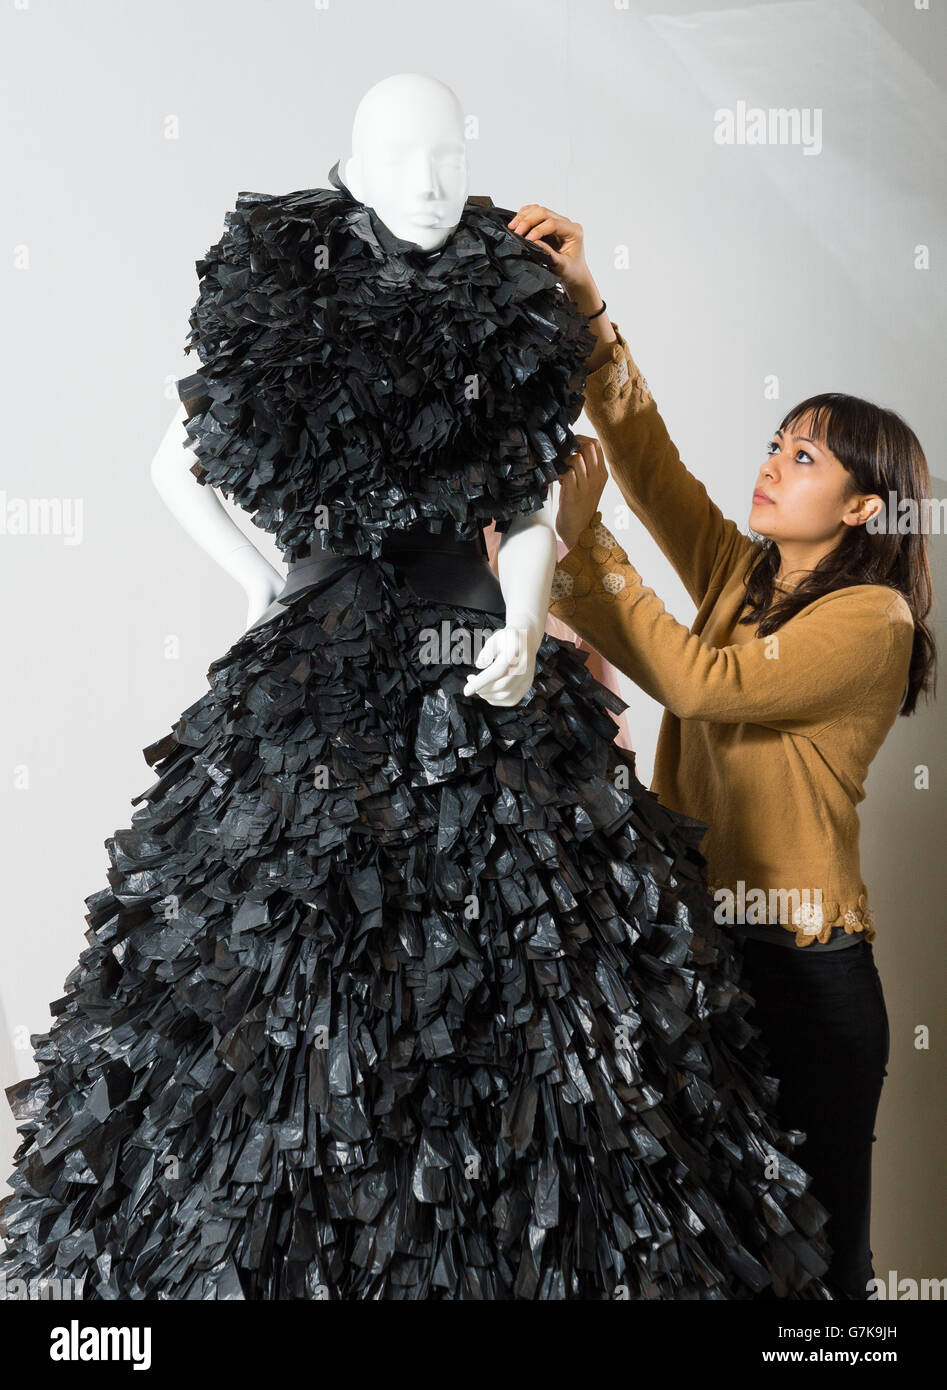 Angela Tye ajusta un vestido Gareth Pugh usado por Lady Gaga, que está hecho de bolsas de basura negras trituradas, parte de la exposición "Women Fashion Power" en el Design Museum, Londres, que examina cómo las mujeres influyentes en la política, los negocios y la cultura popular han utilizado e influido en la moda. Foto de stock